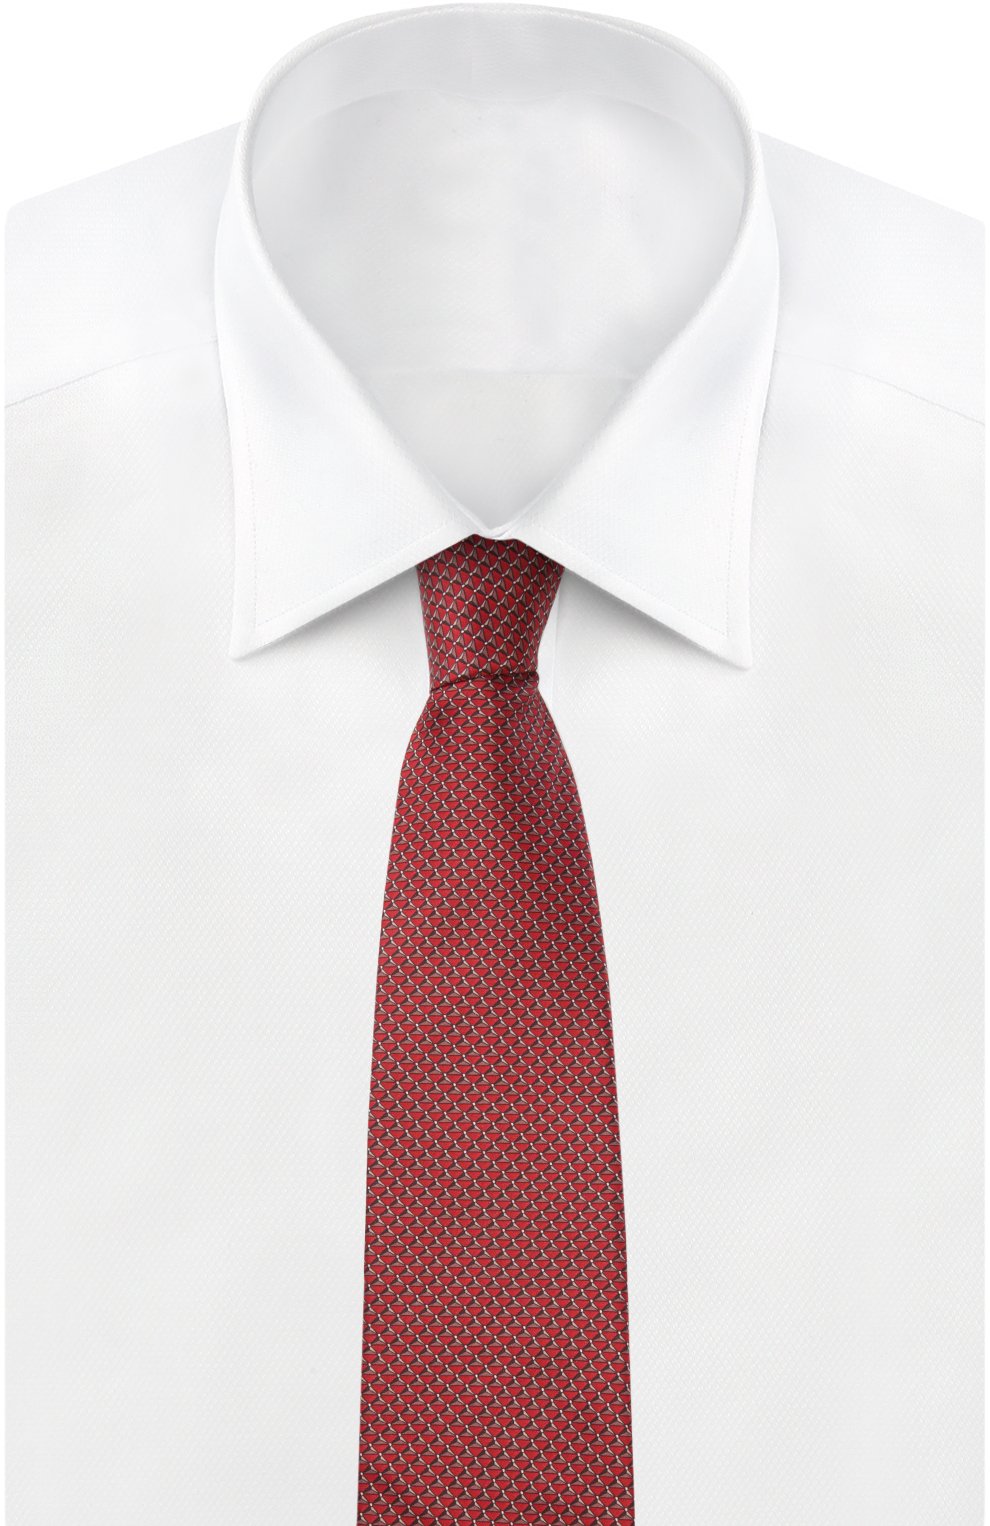 Мужской комплект из галстука и платка LANVIN красного цвета, арт. 4228 | Фото 3 (Материал: Текстиль, Шелк)